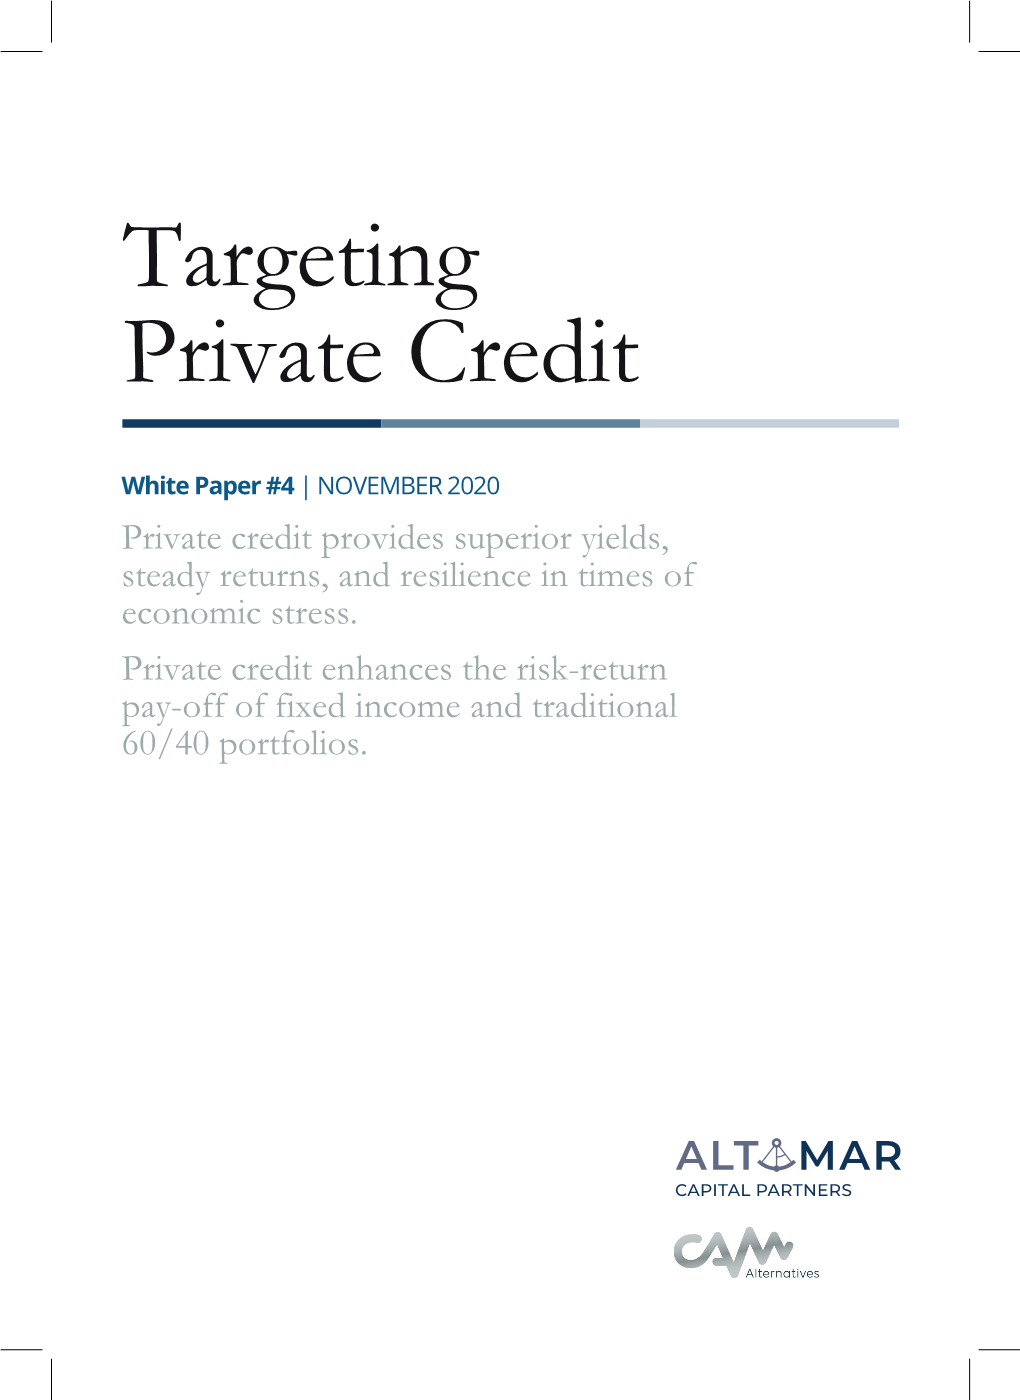 Targeting Private Credit